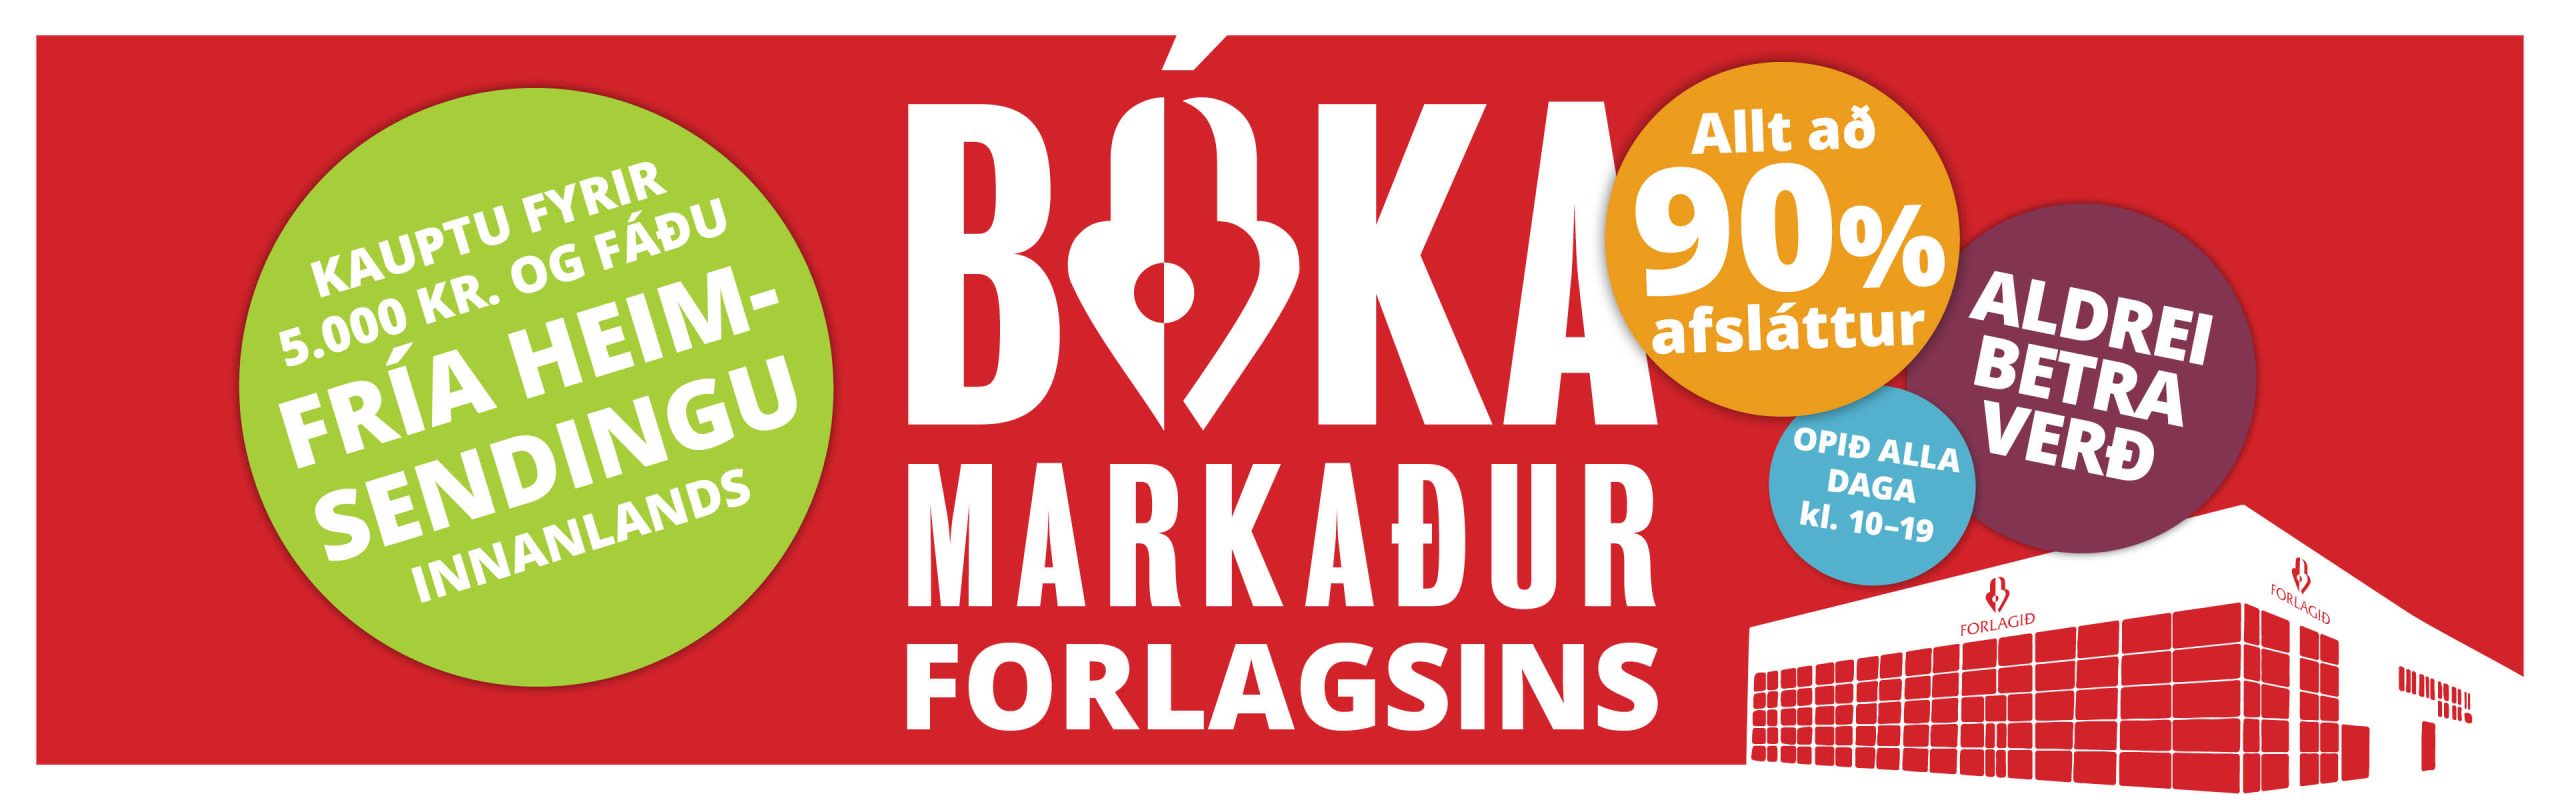 Bókarmarkaður_Ekkert sendingargjald